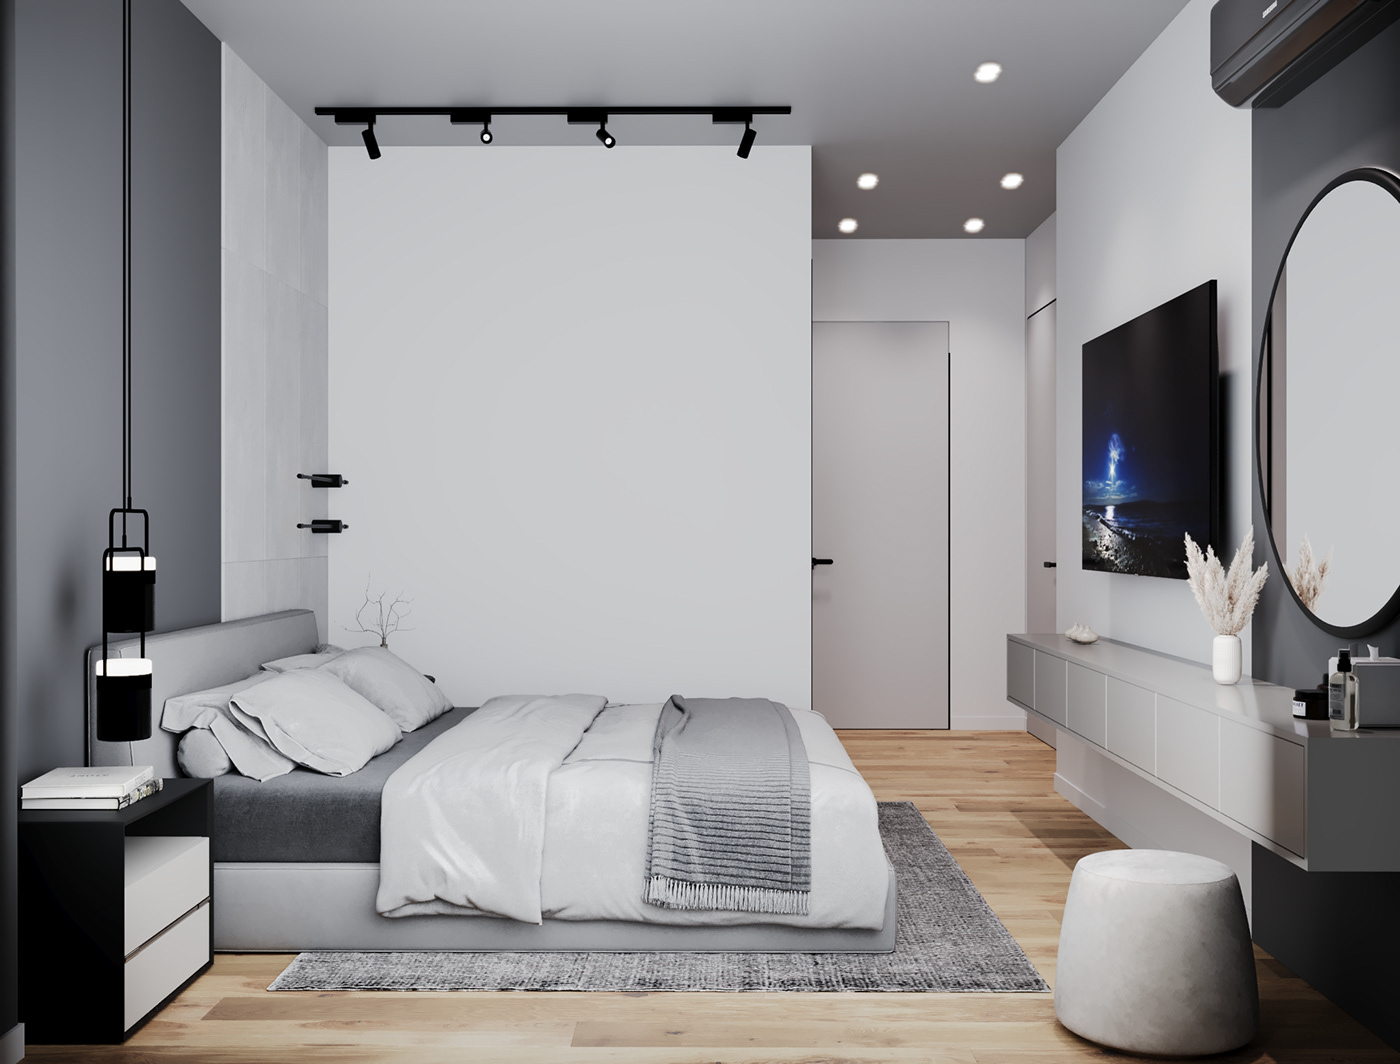 indoor interior design  architecture Render visualization corona 3ds max modern 3D archviz